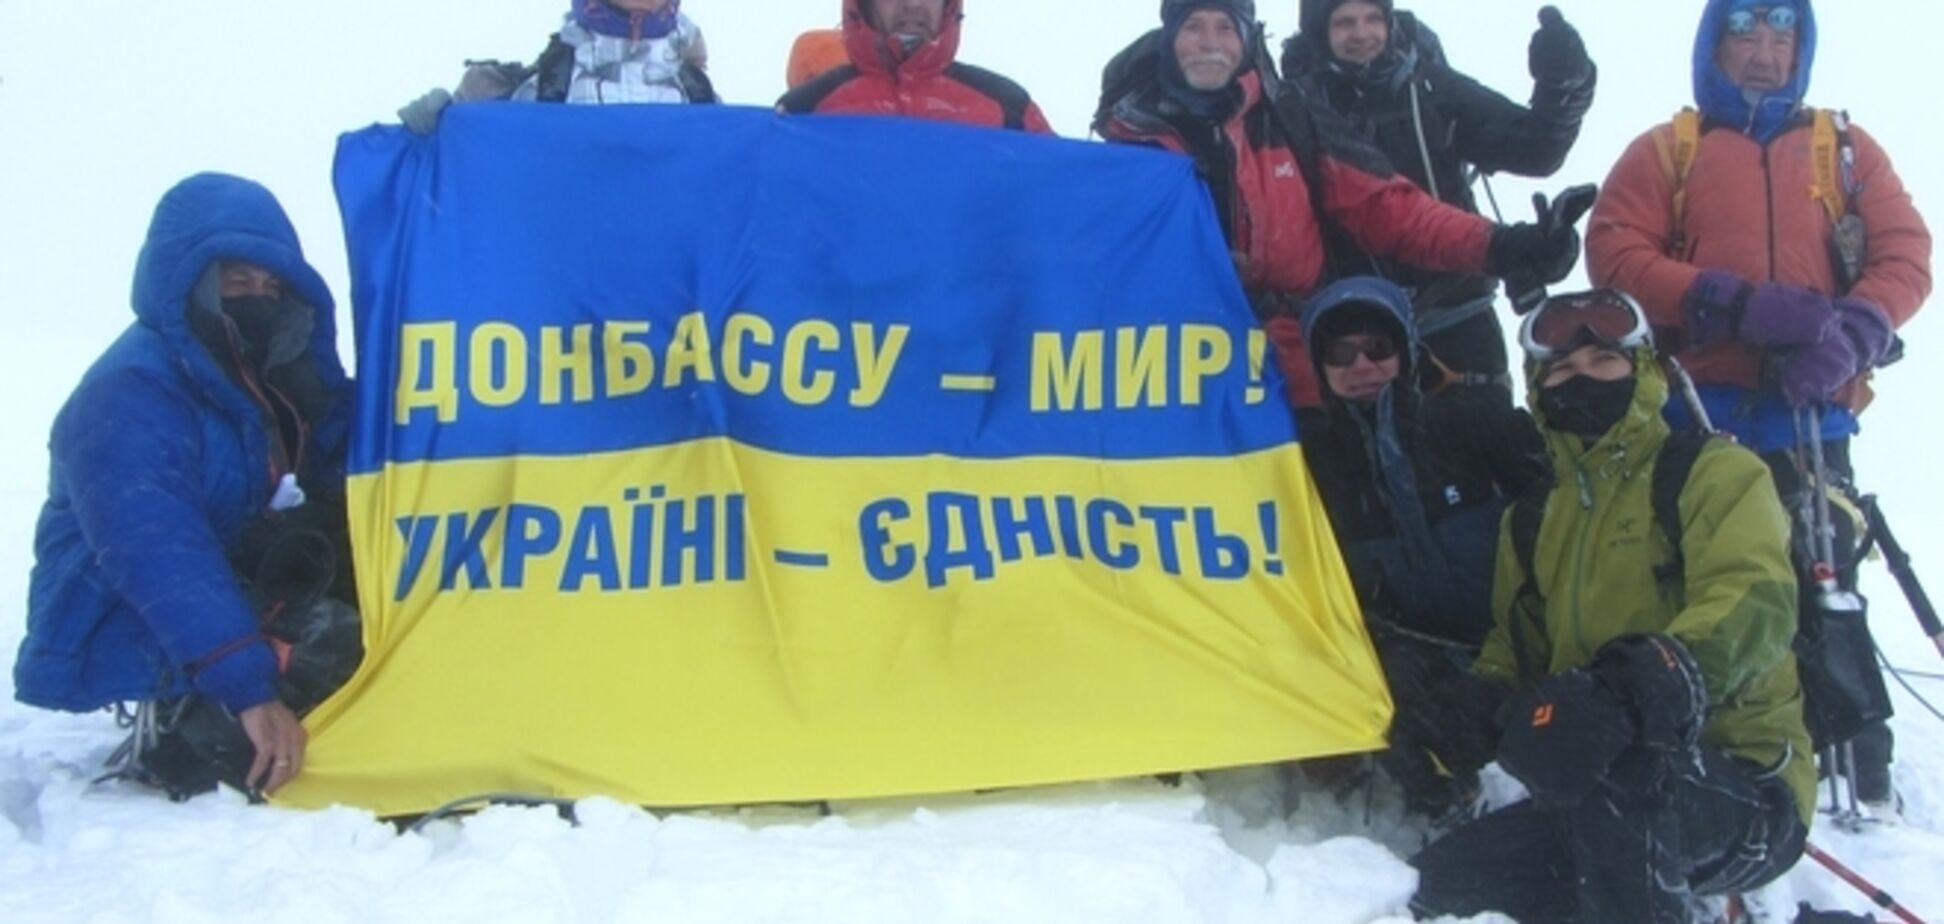 На найвищій вершині Європи з'явився прапор 'Донбасу - мир, Україну - єдність'